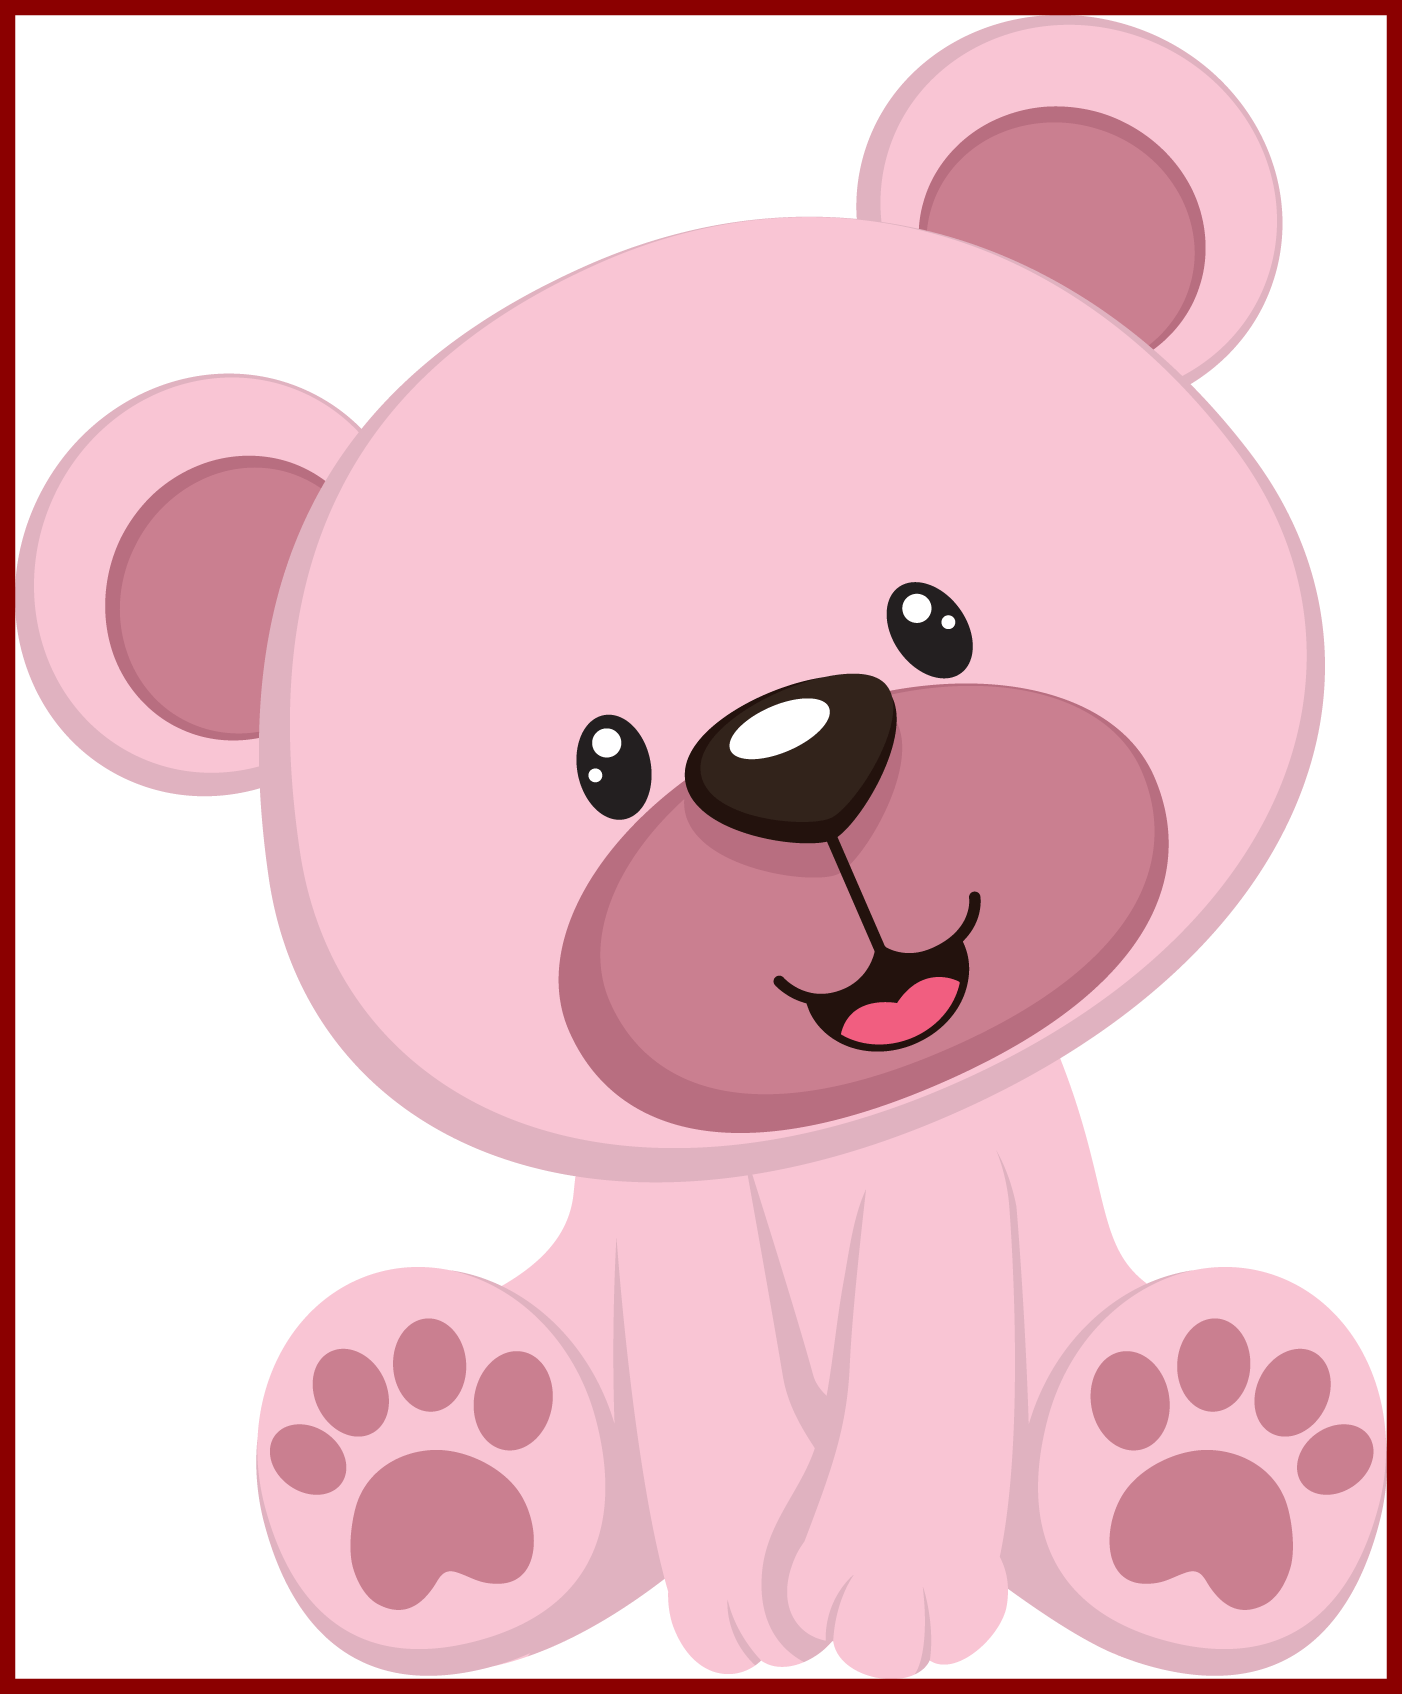 Teddy bear osito